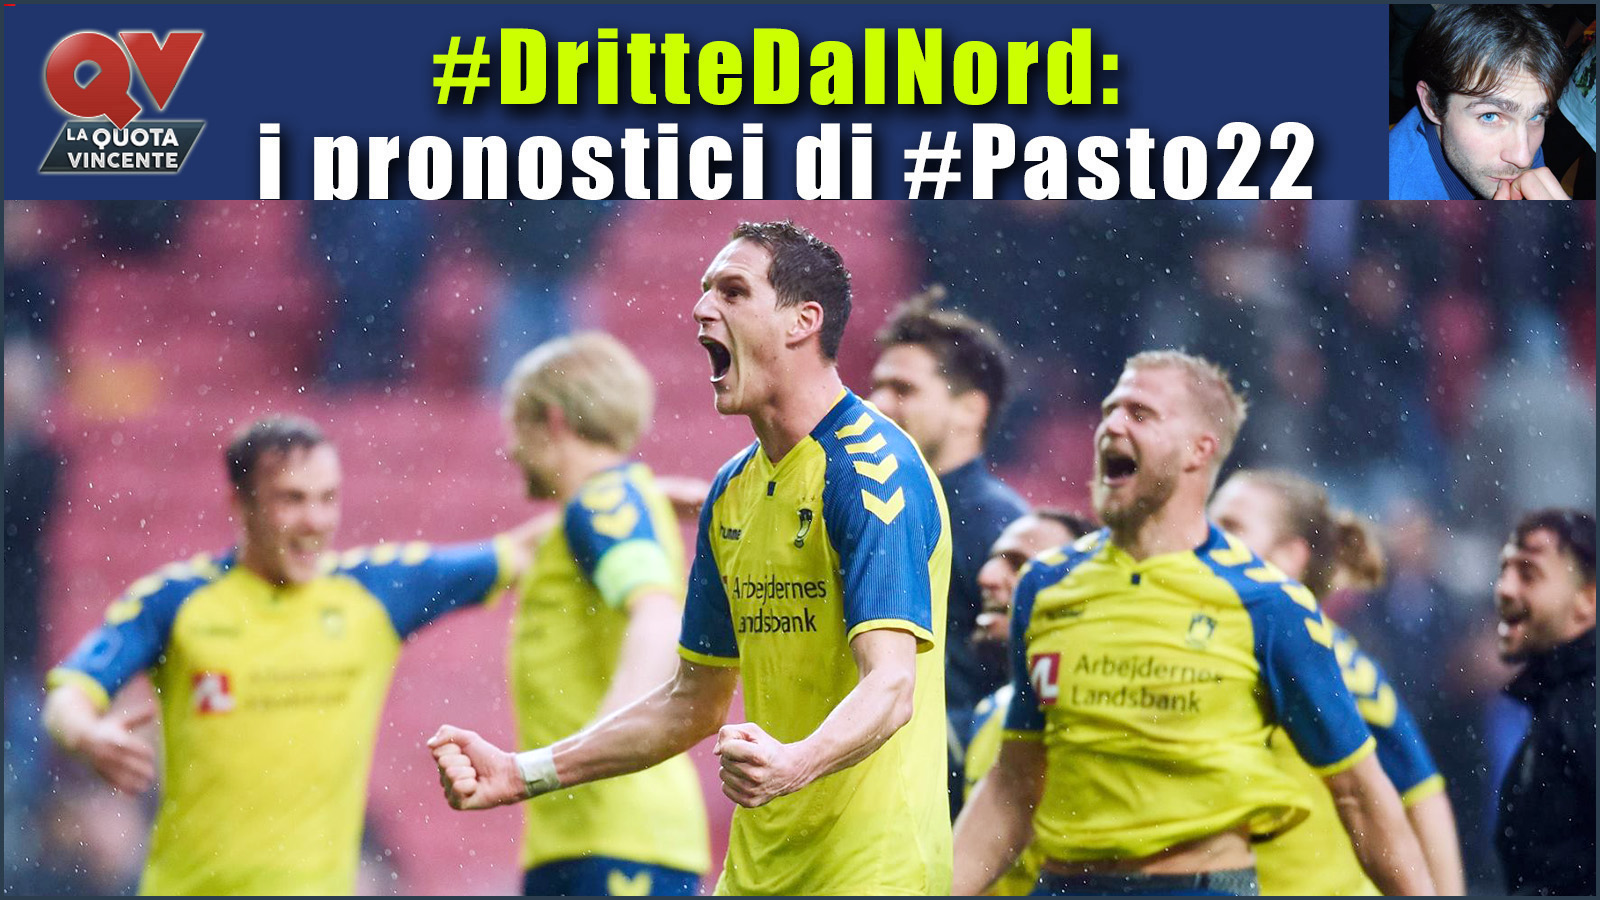 Pronostici Dritte dal Nord 9-12 febbraio: torna la Superligaen, le dritte di #Pasto22 in Danimarca